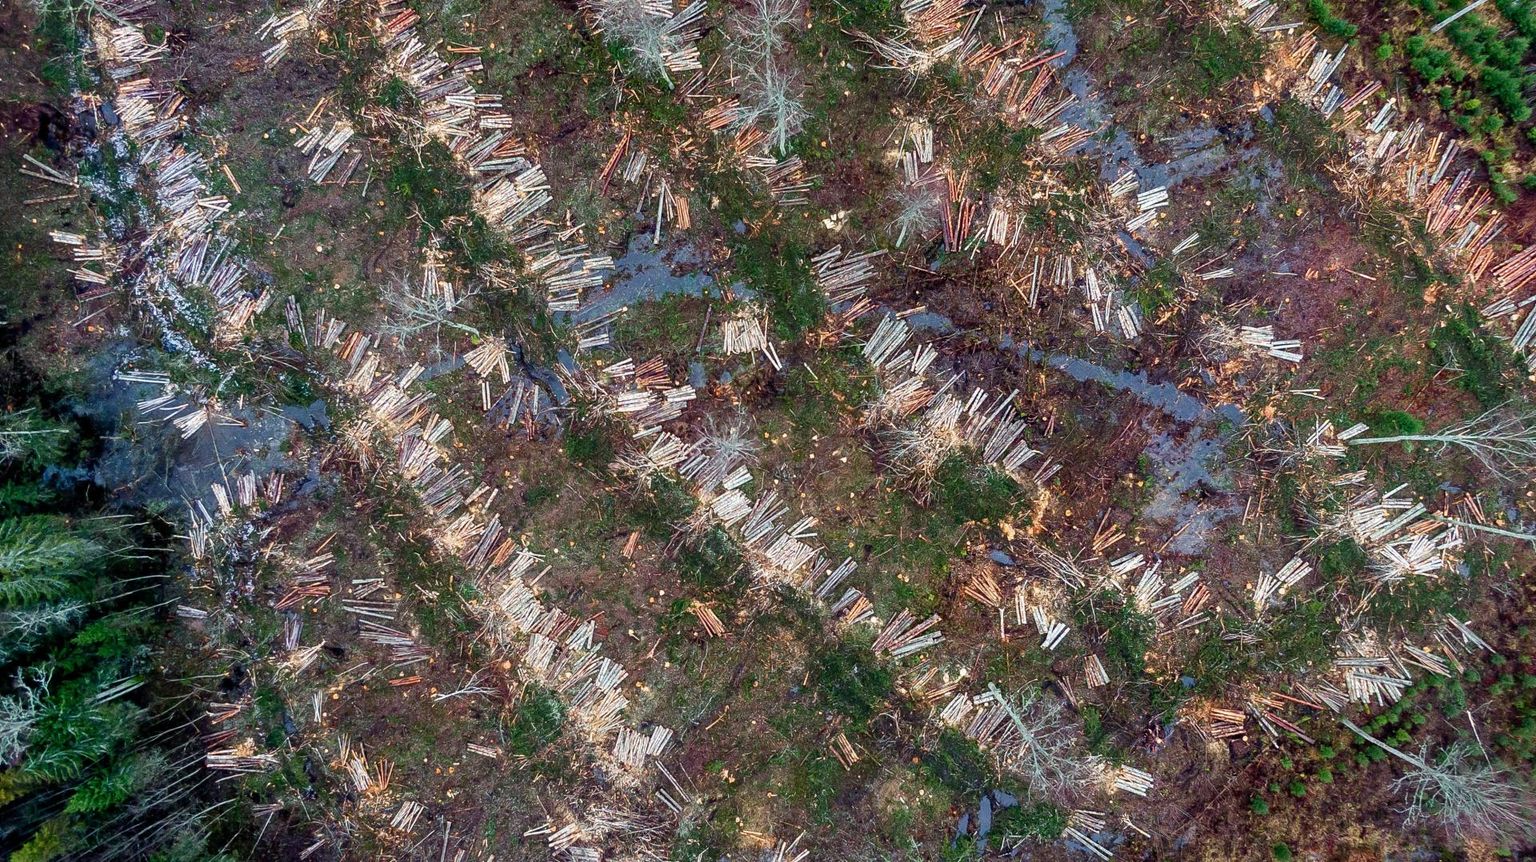 Tartu Ülikooli geograafid analüüsisid raiealade suurusi möödunud 20 aasta jooksul ja leidsid, et alates 2015. aastast on hüppeliselt kasvanud suurte lageraielankide (pindala üle kuue hektari) arv. Ökoloogilisest perspektiivist on see kõige halvem raieviis.

RMK felling works. Forest, Clearfelling, drone view, aerophoto
FOTO:SANDER ILVEST/POSTIMEES FOTO: Sander Ilvest